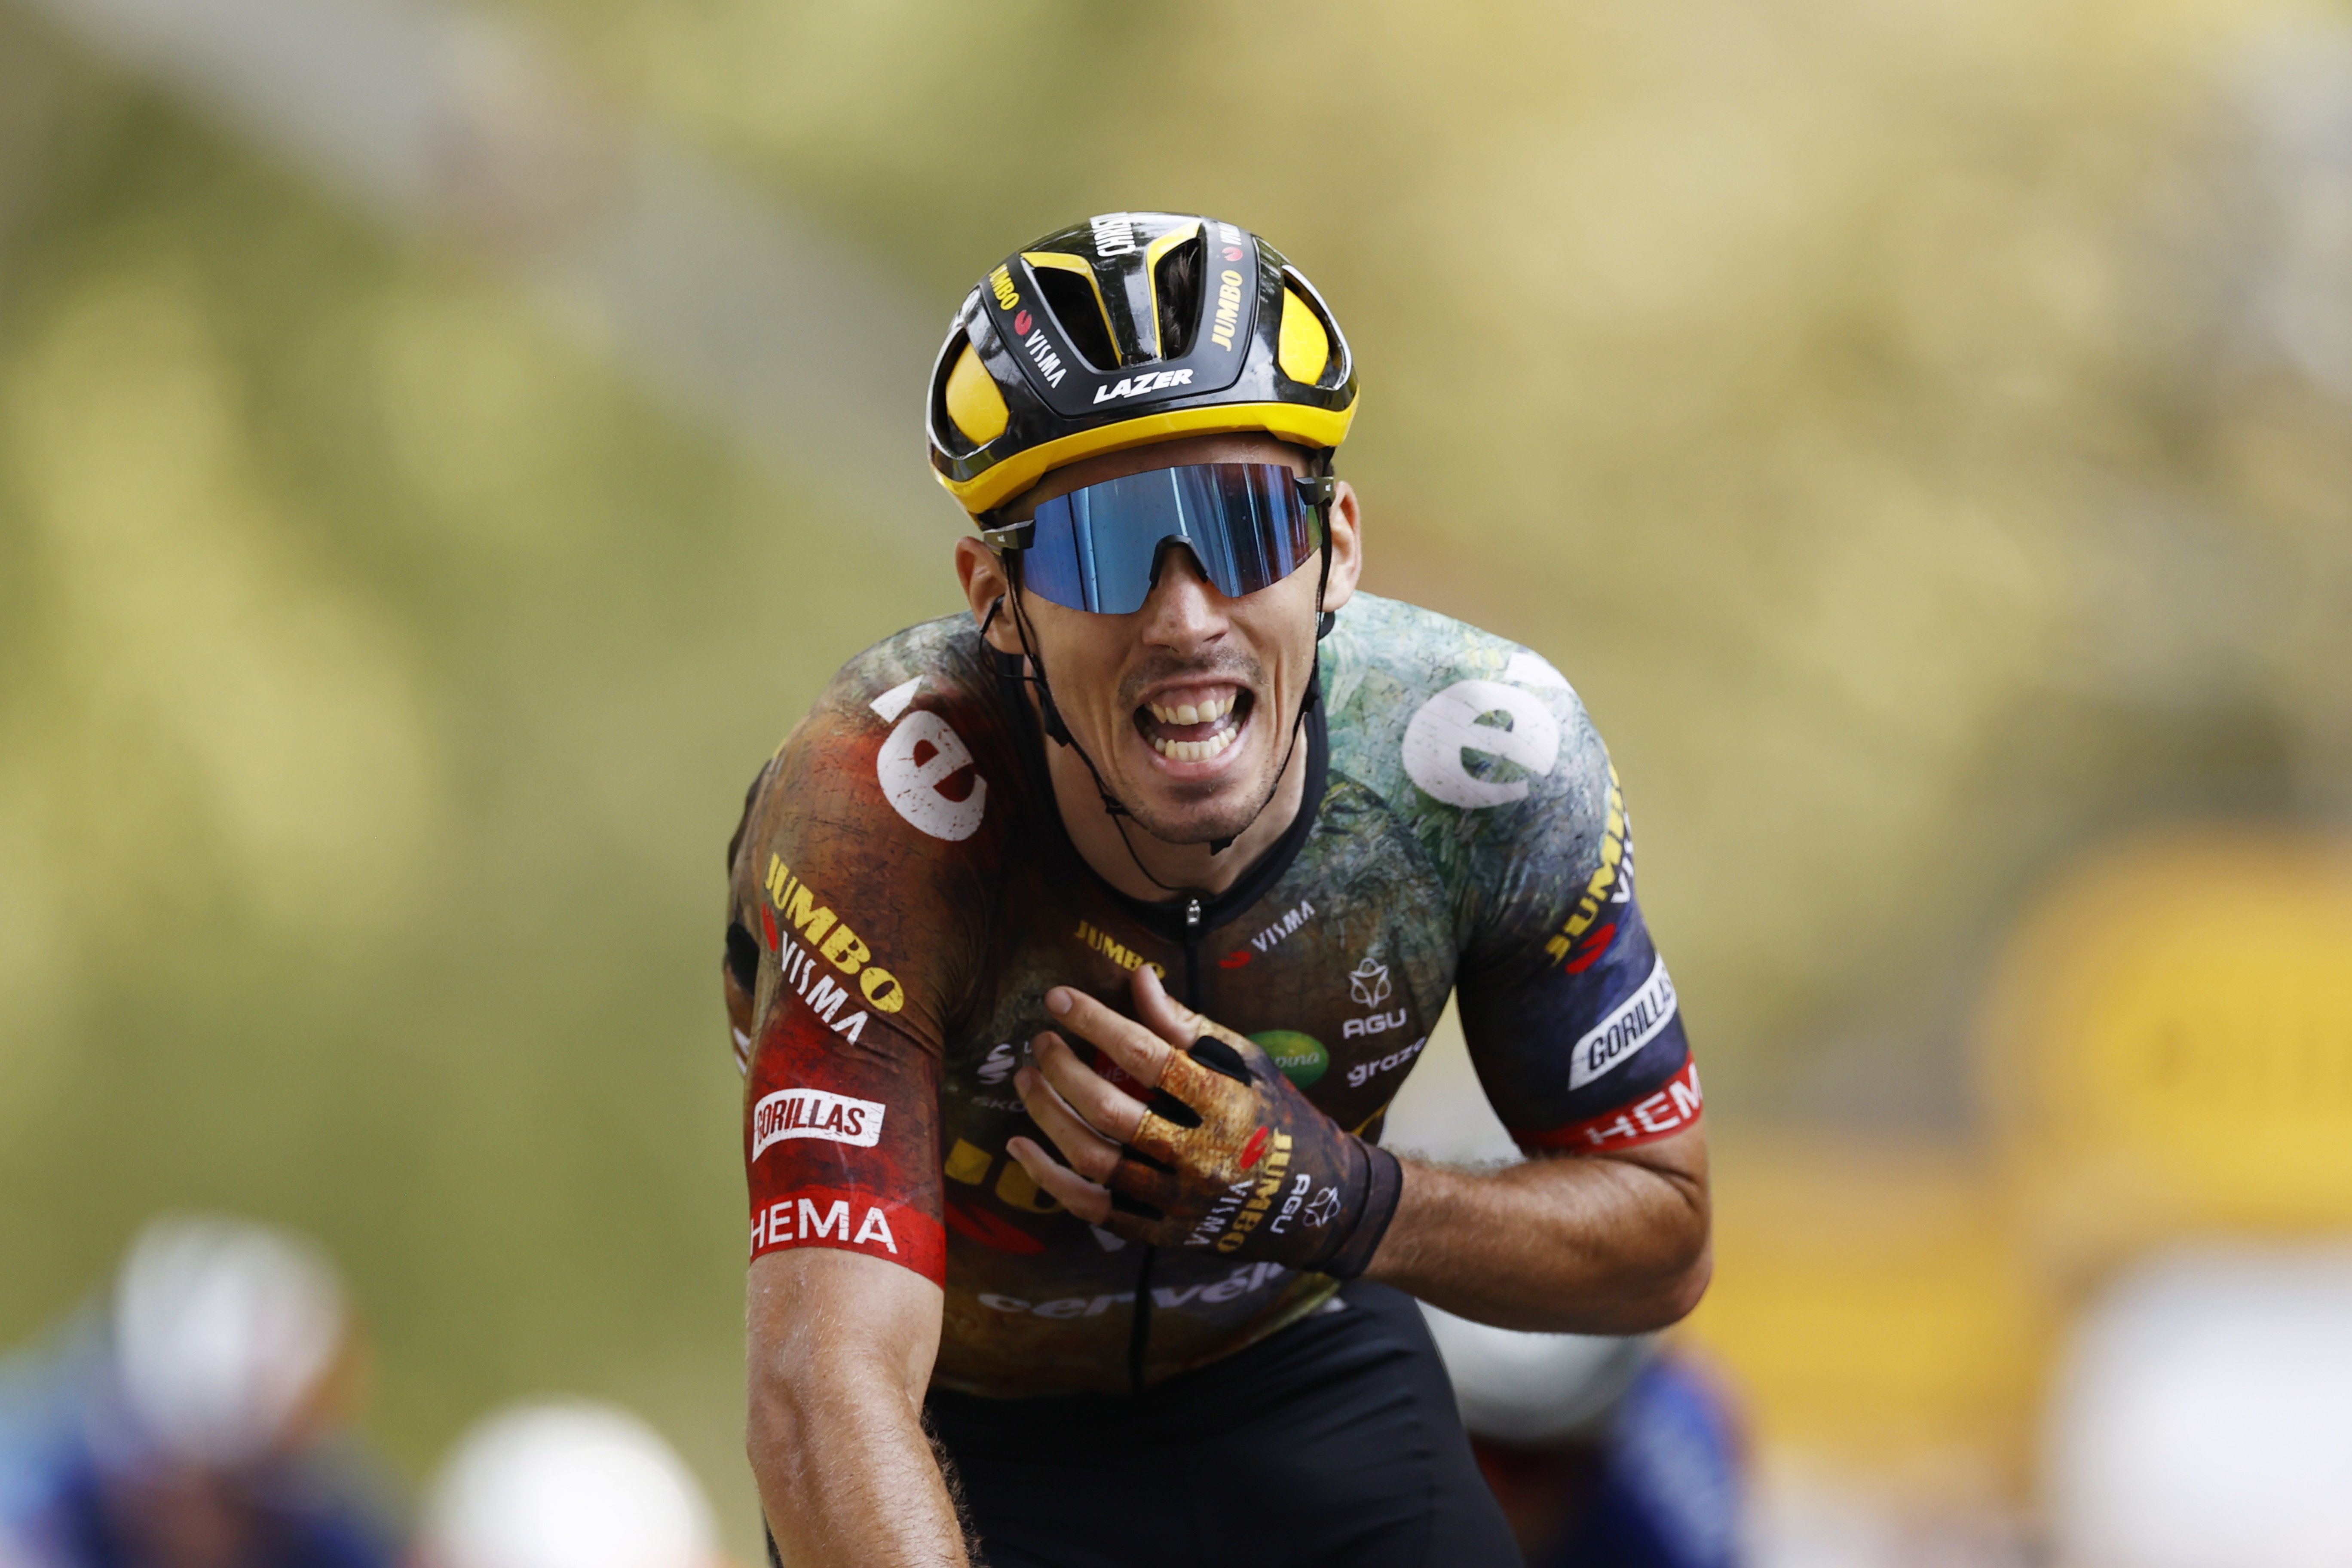 Laporte s'imposa a Cahors i completa la gran festa de Jumbo al Tour de França